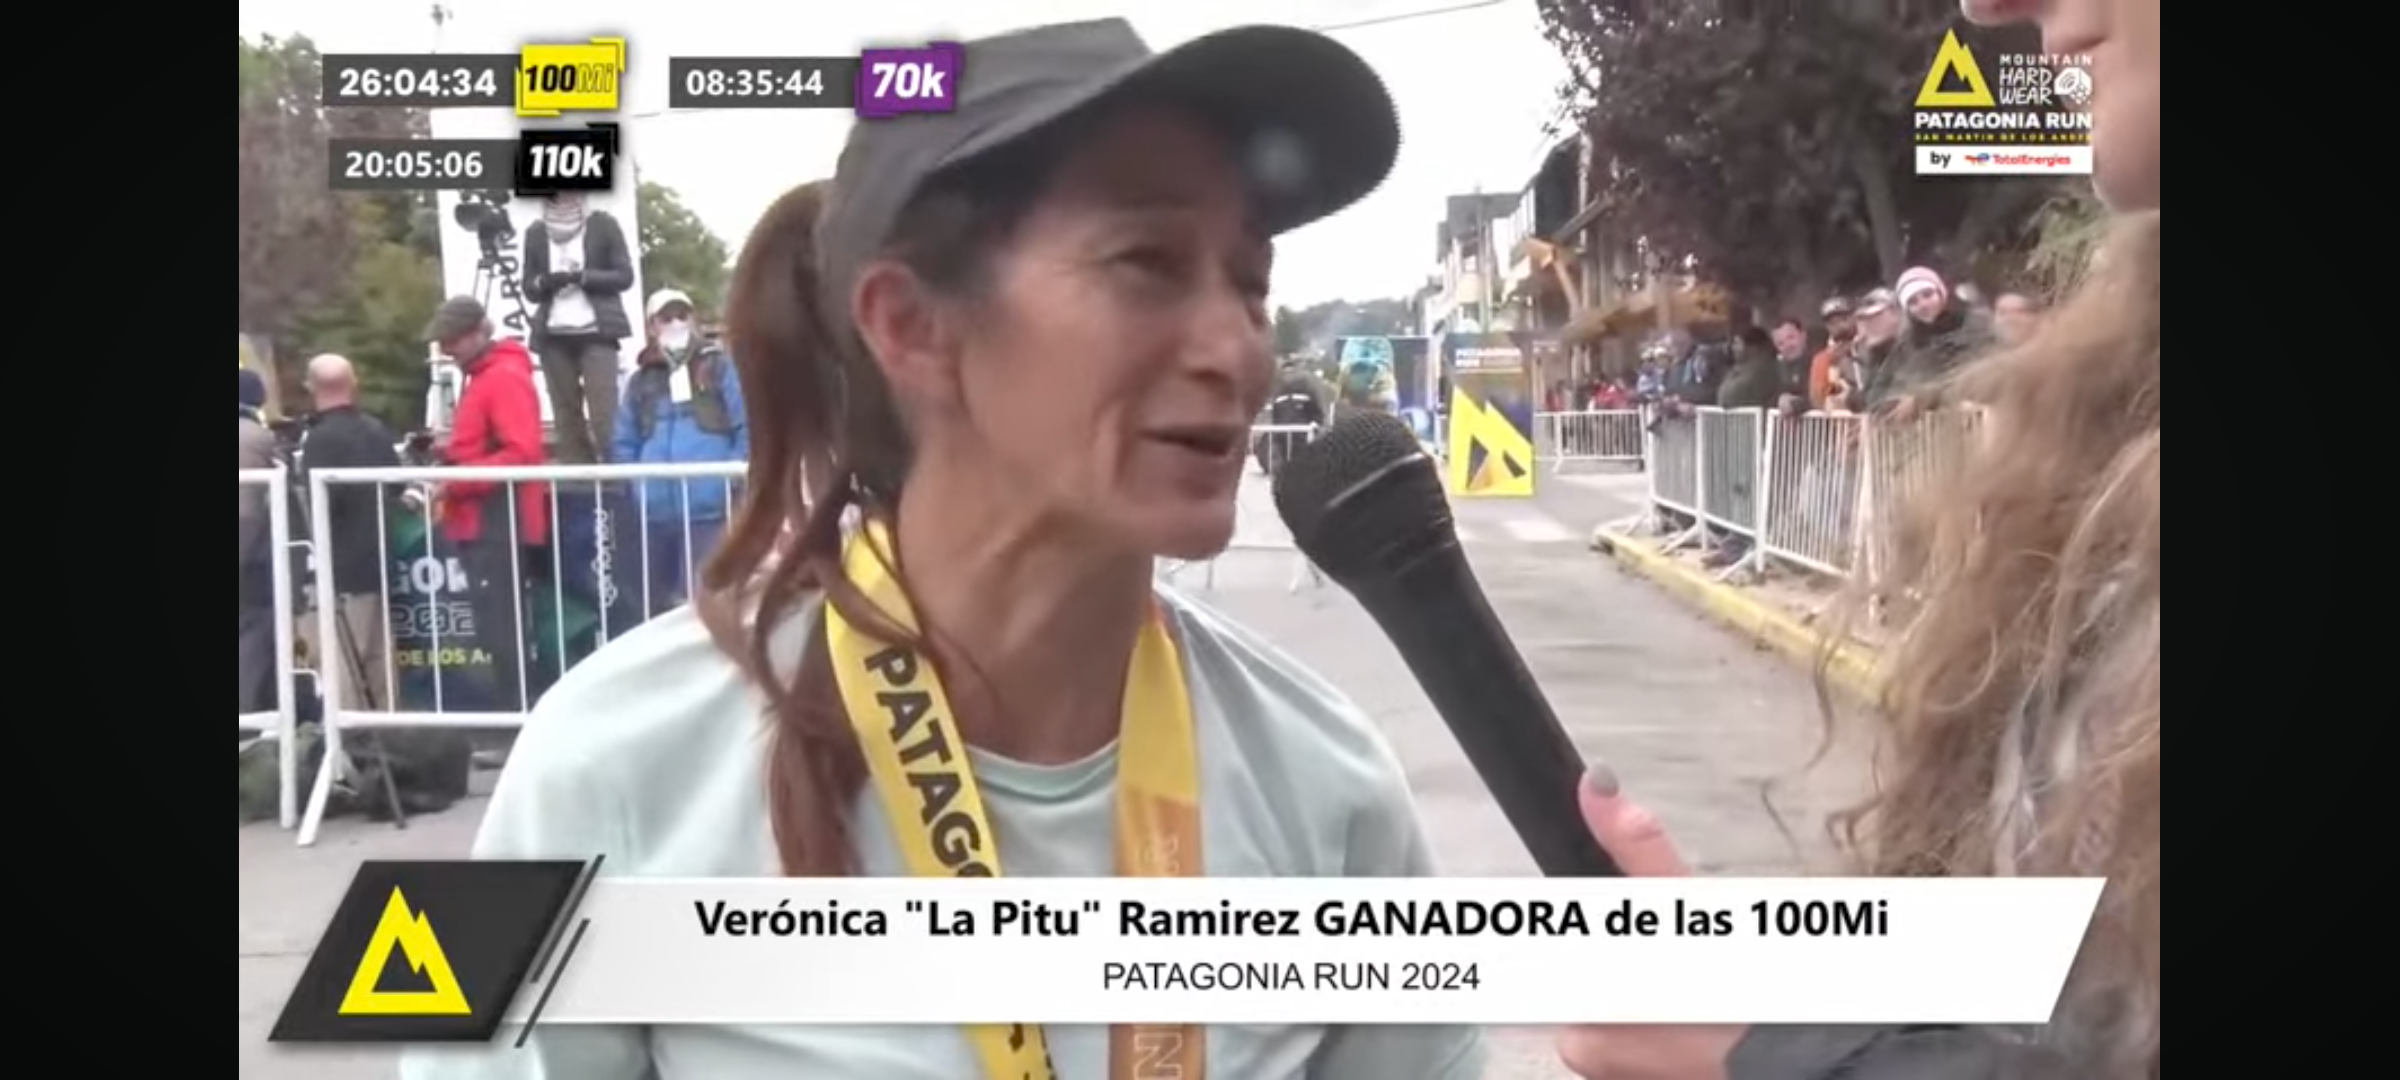 Patagonia Run: Vero «Pitu» Ramírez se queda con las 100 millas